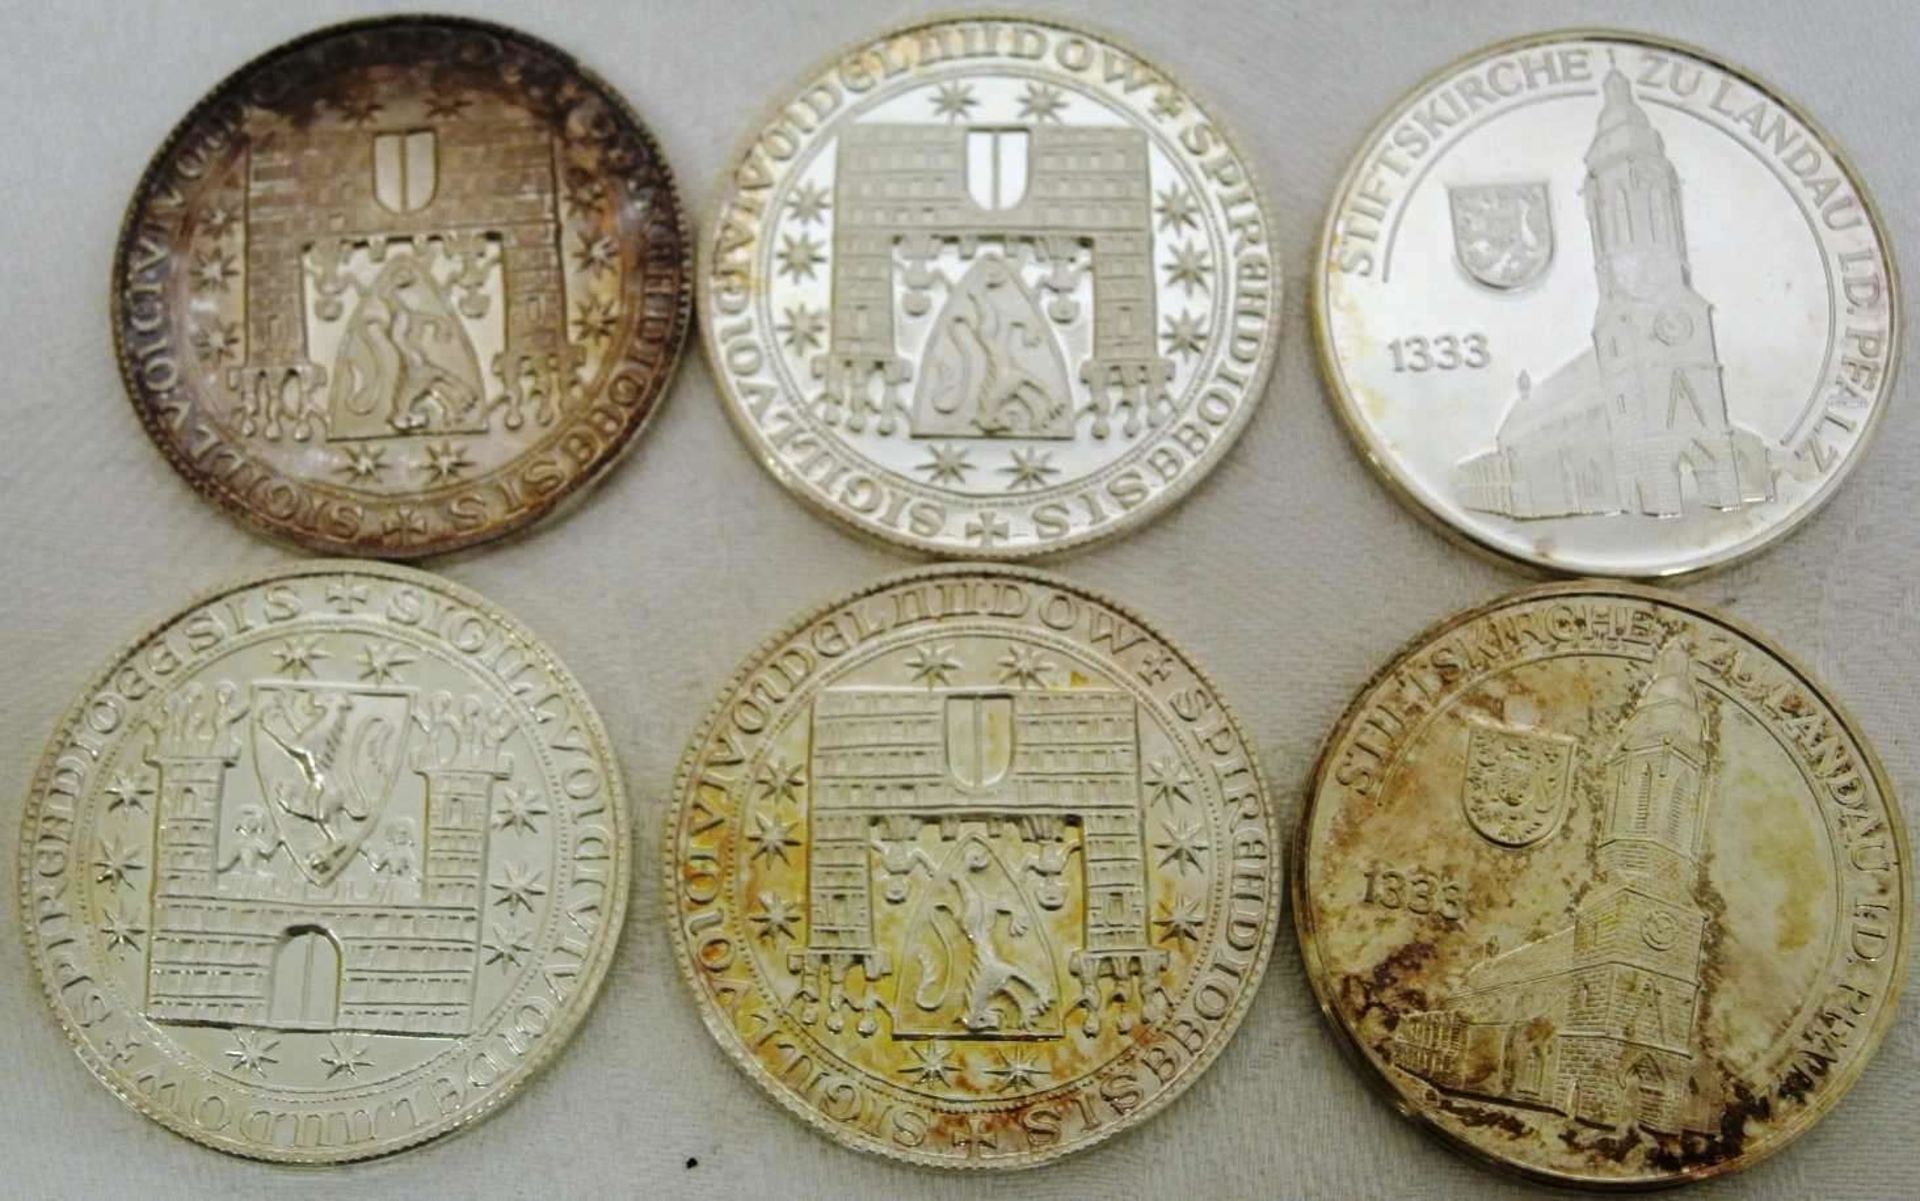 Lot Silbermedaillen, "Stadt Landau", insgesamt 6 Stück, 1000er Silber, Gewicht ca. 87 gr